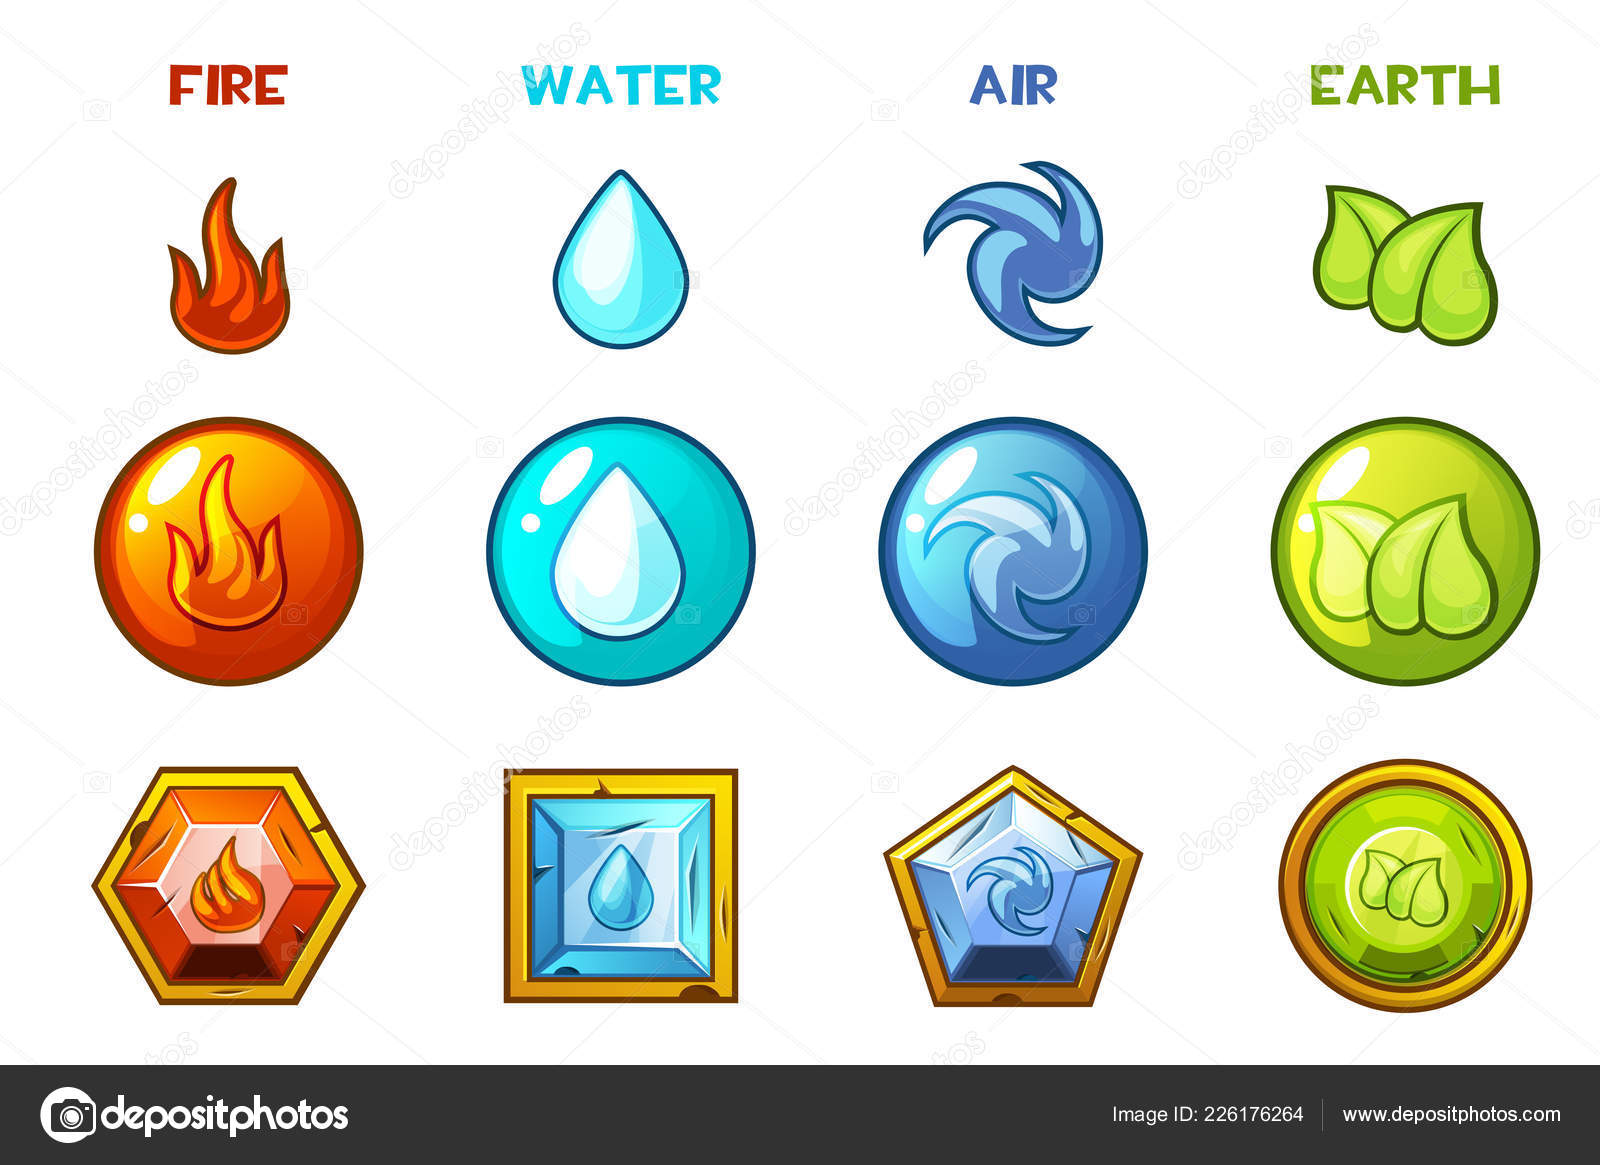 escudos com 4 elementos naturais para o jogo. ilustração em vetor